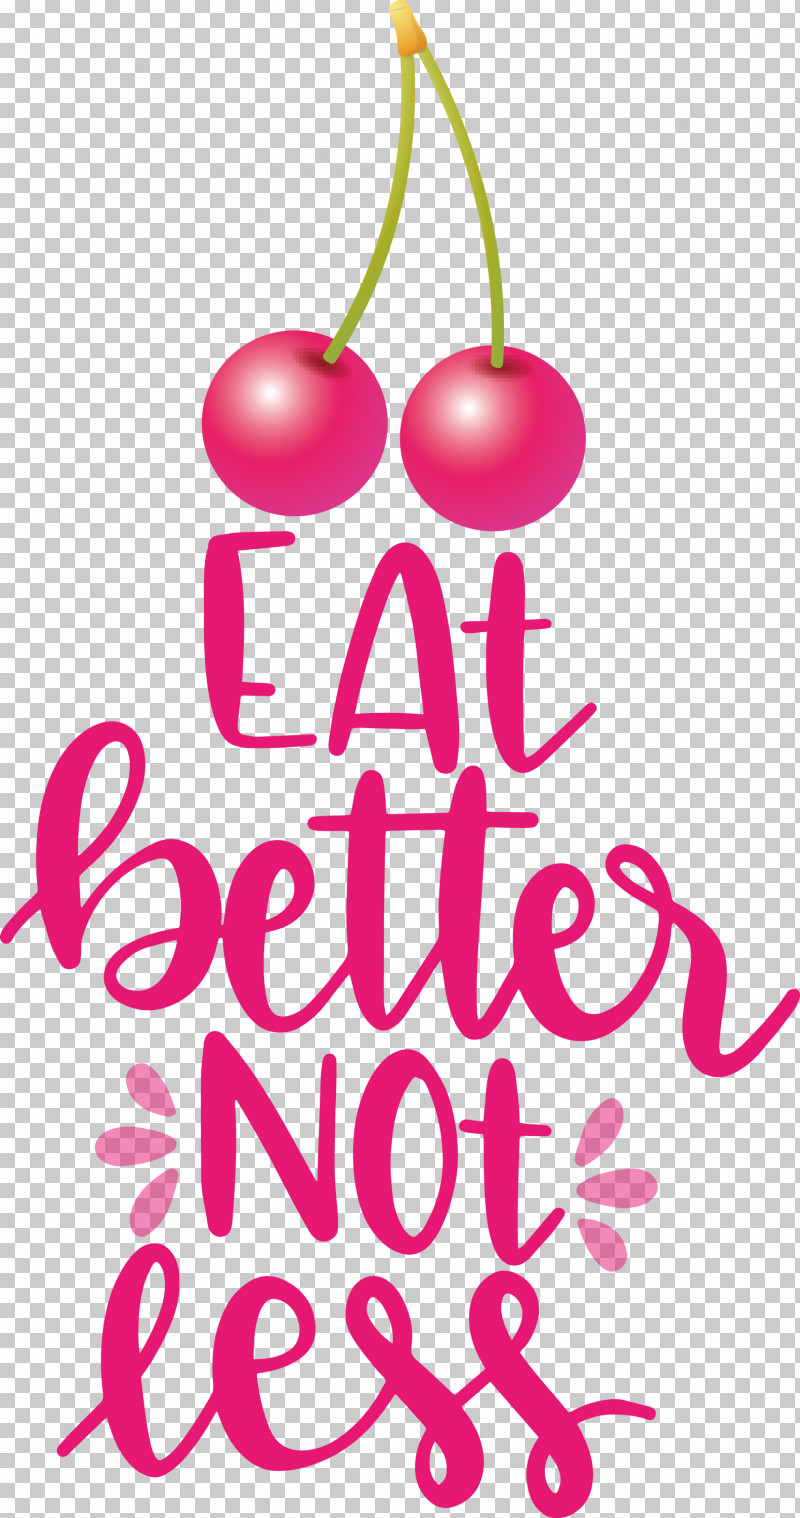 Eat Better Not Less Food Kitchen PNG, Clipart, Biology, Floral Design, Flower, Food, Fruit Free PNG Download